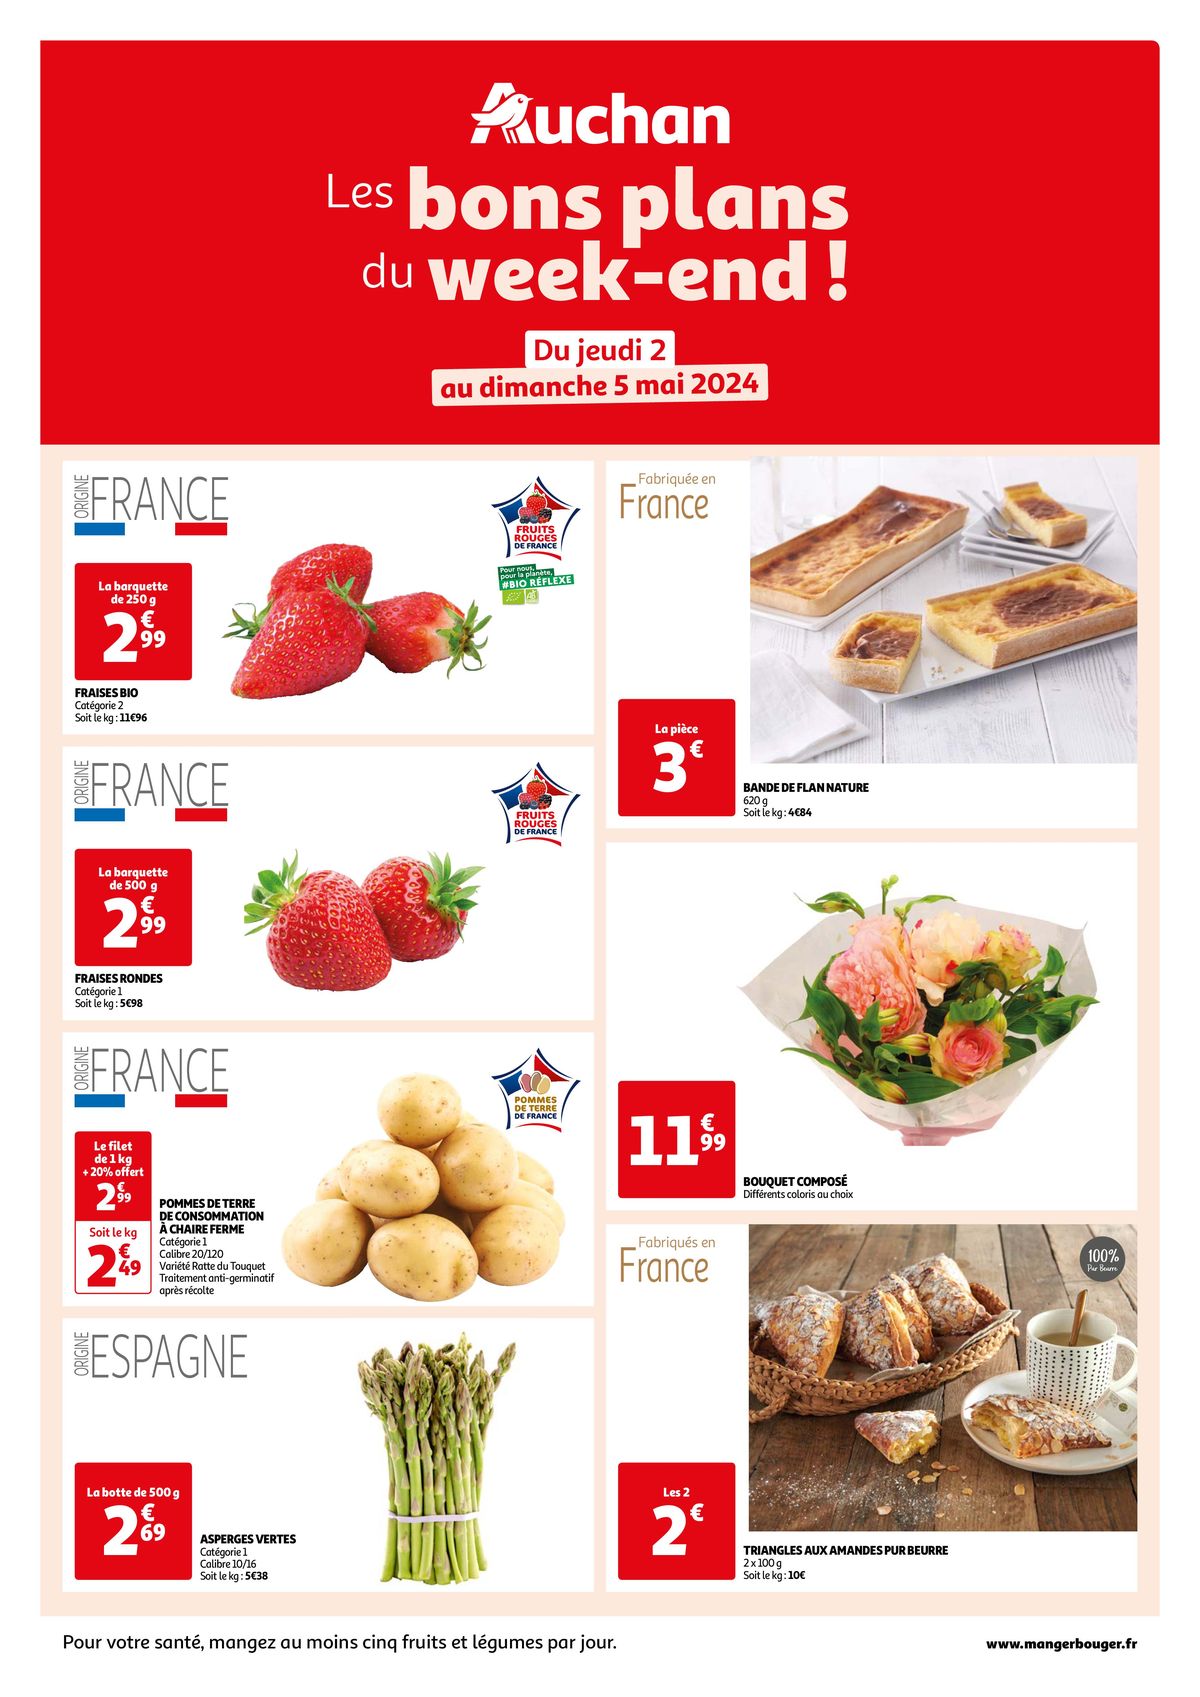 Catalogue  Les bons plans du week-end dans votre hyper !, page 00001